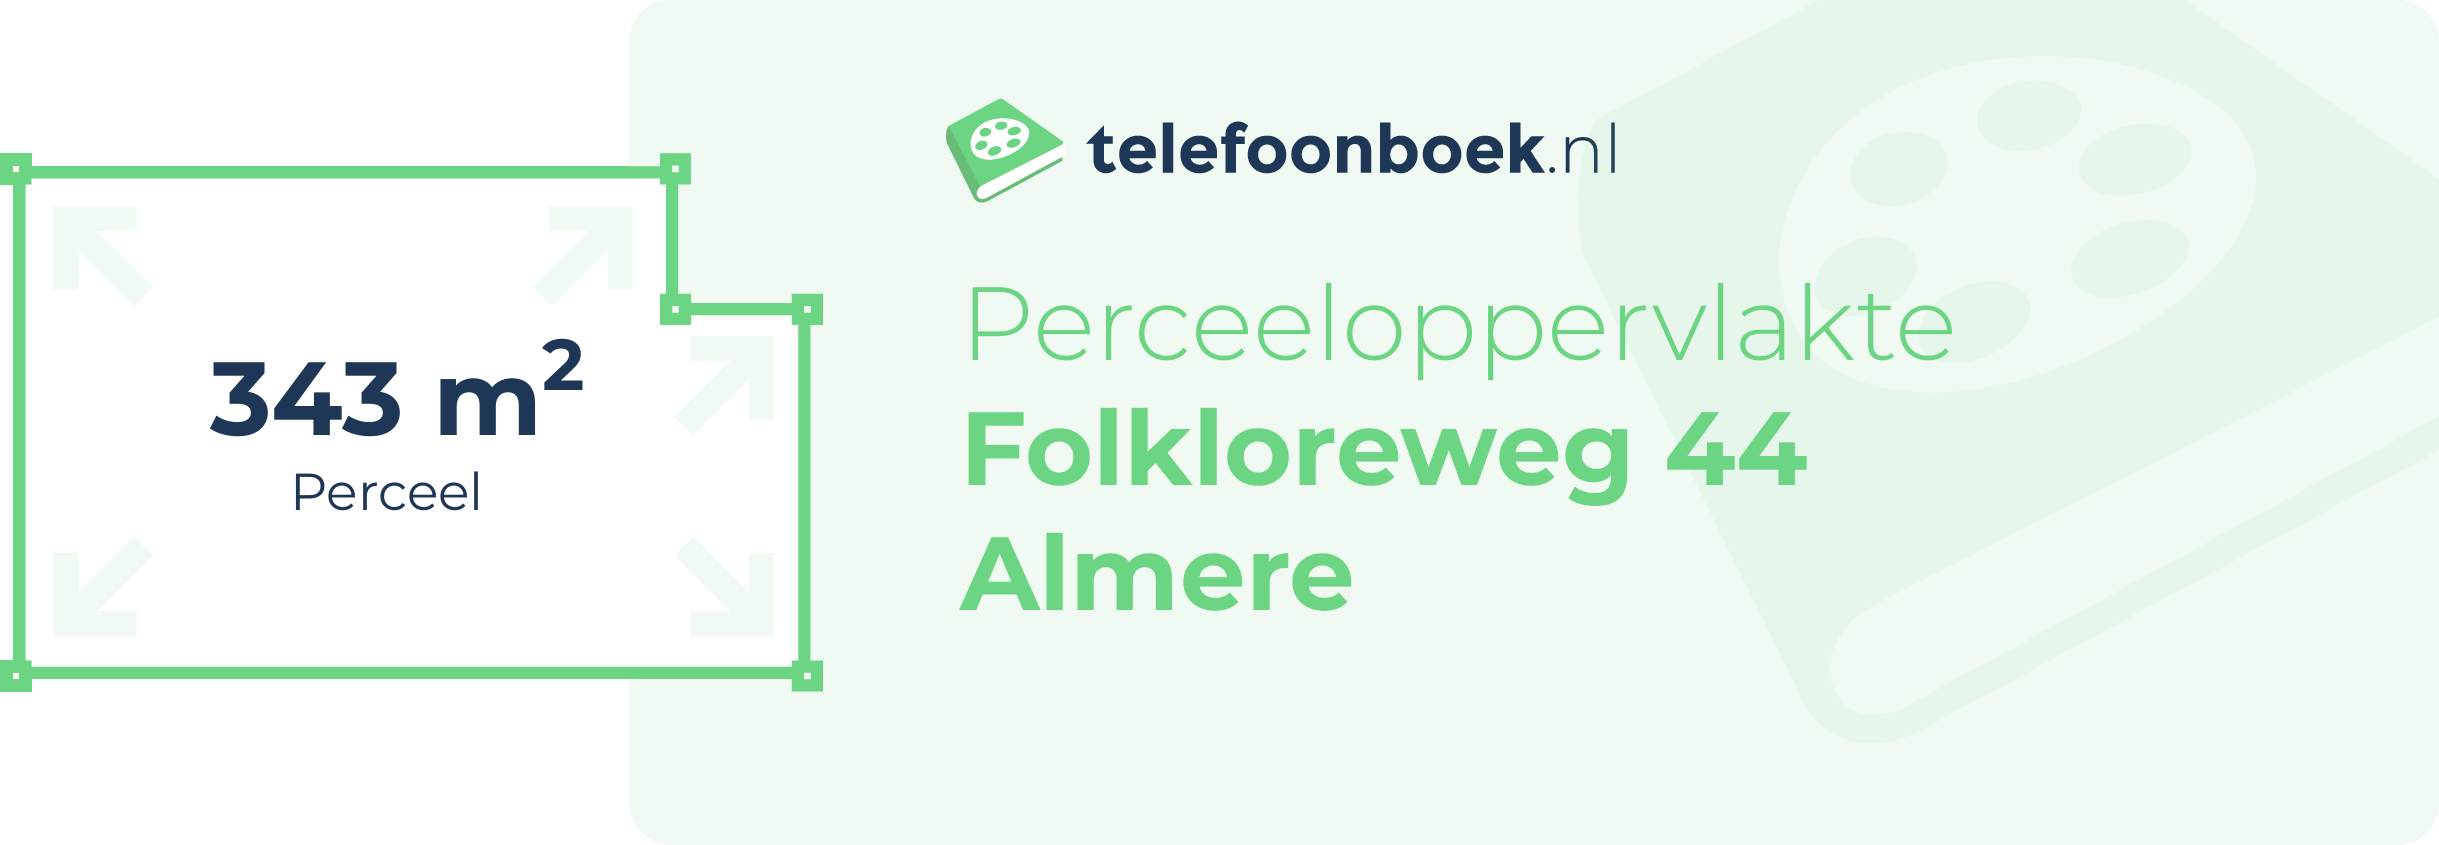 Perceeloppervlakte Folkloreweg 44 Almere